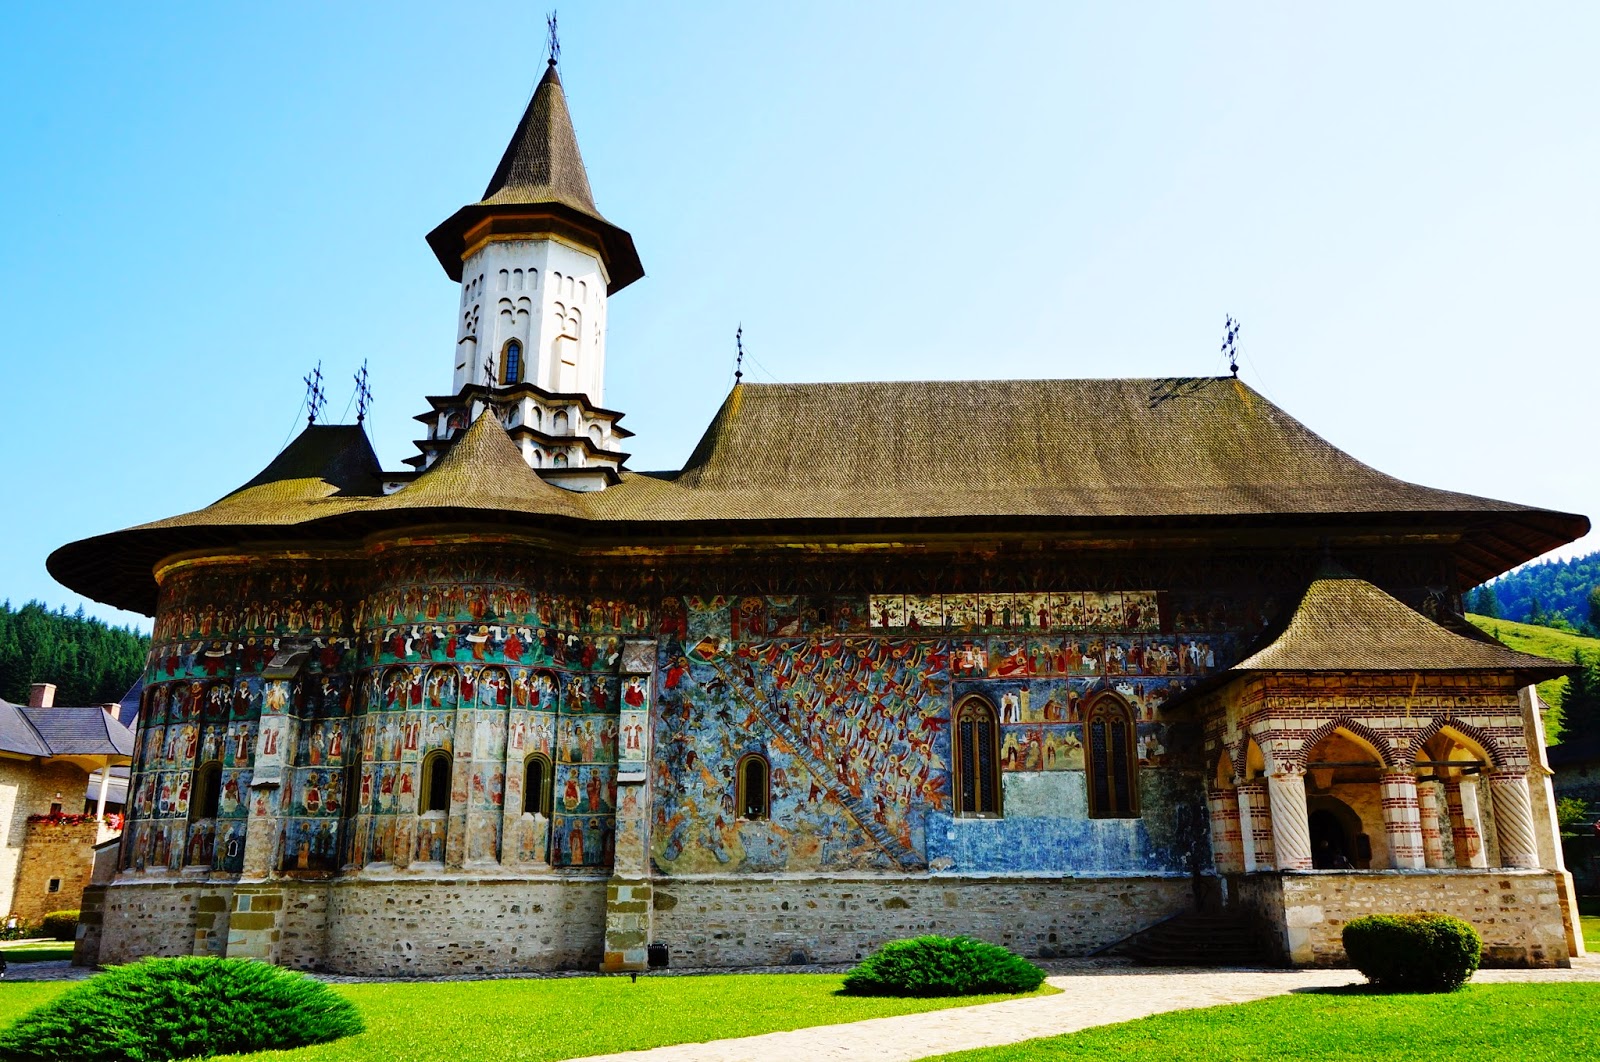 Locații pe care trebuie să le vizitezi în Gura Humorului. Mănăstirea Sucevița